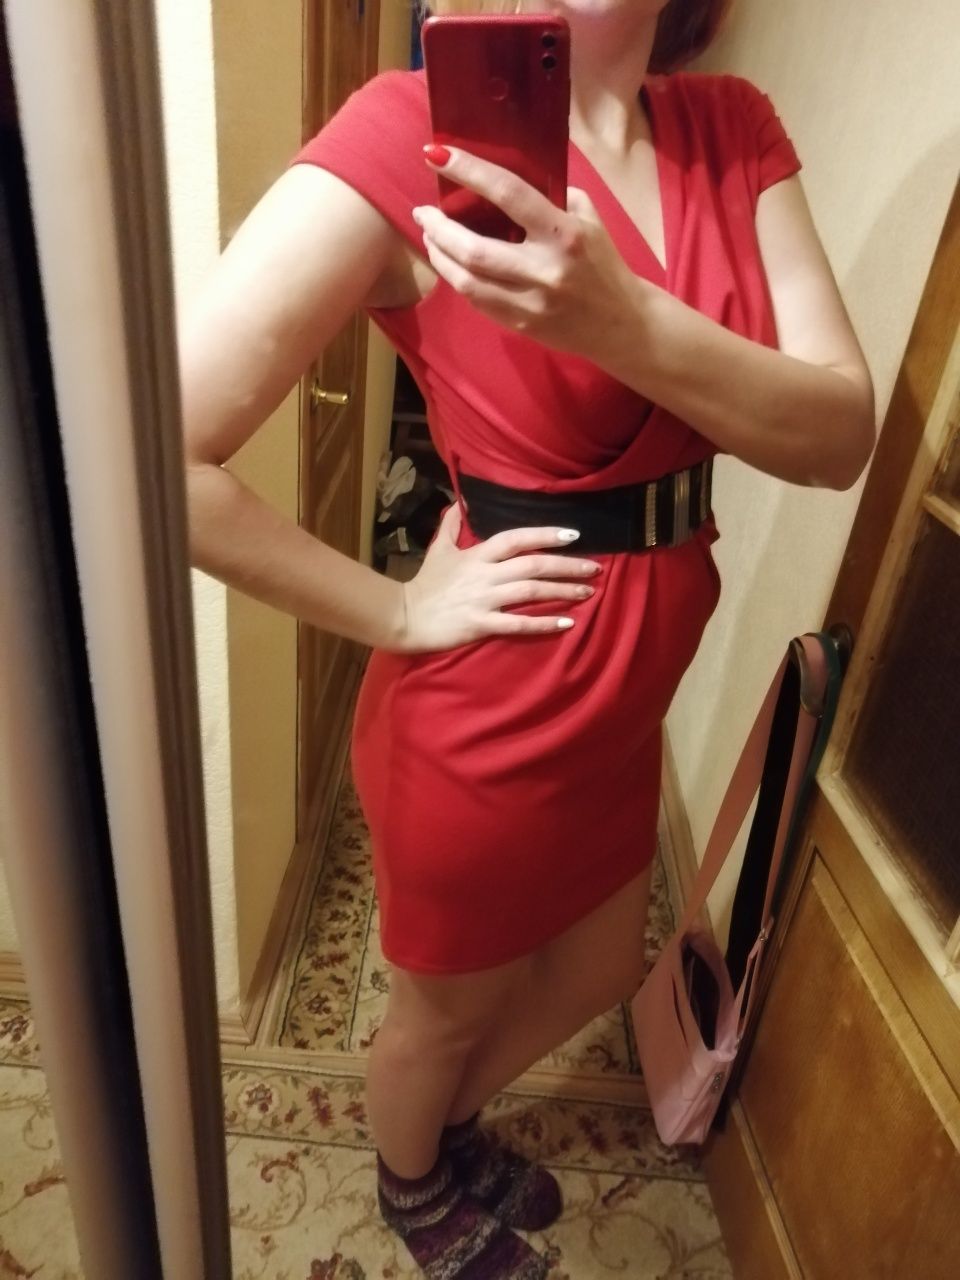 Плаття червоне